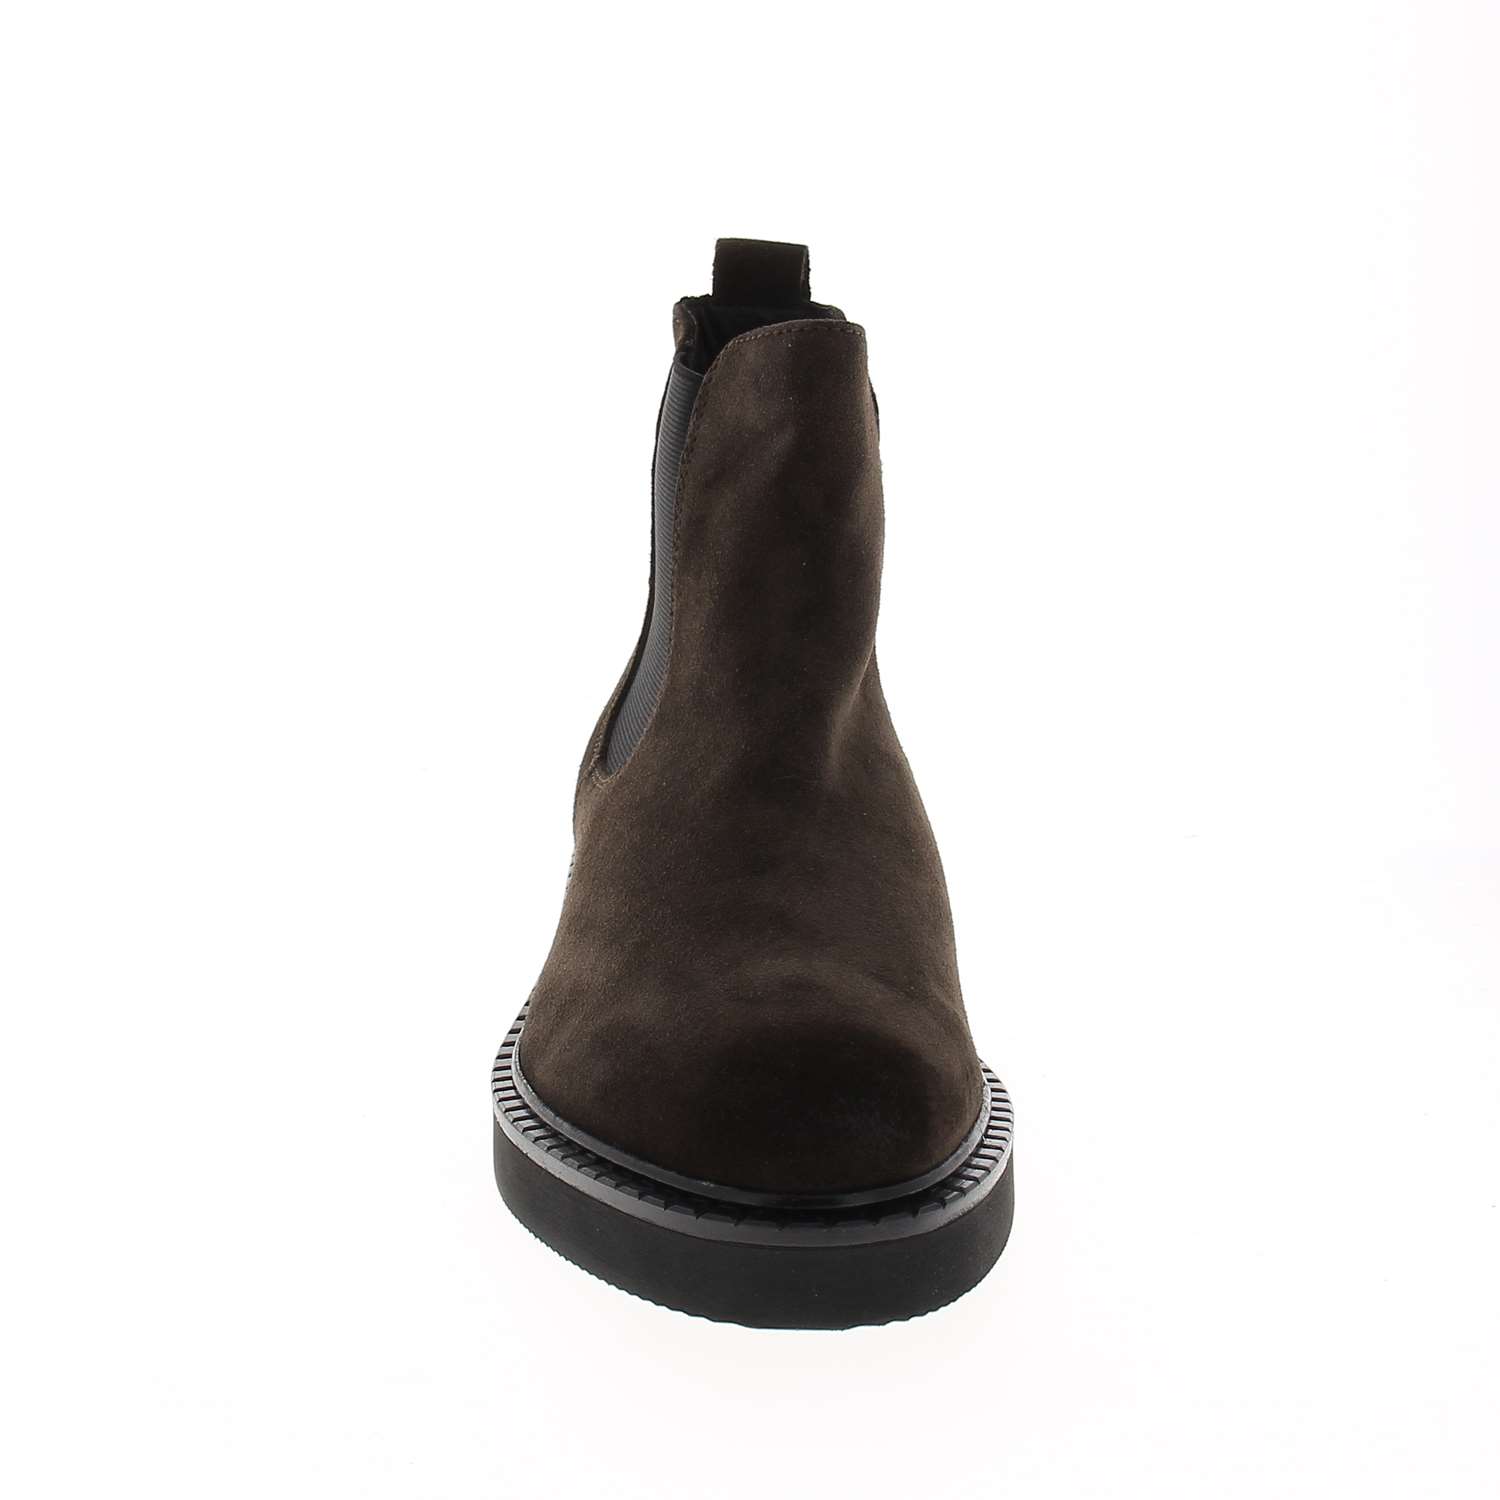 03 - APOMY - XAPI - Boots et bottines - Cuir / textile